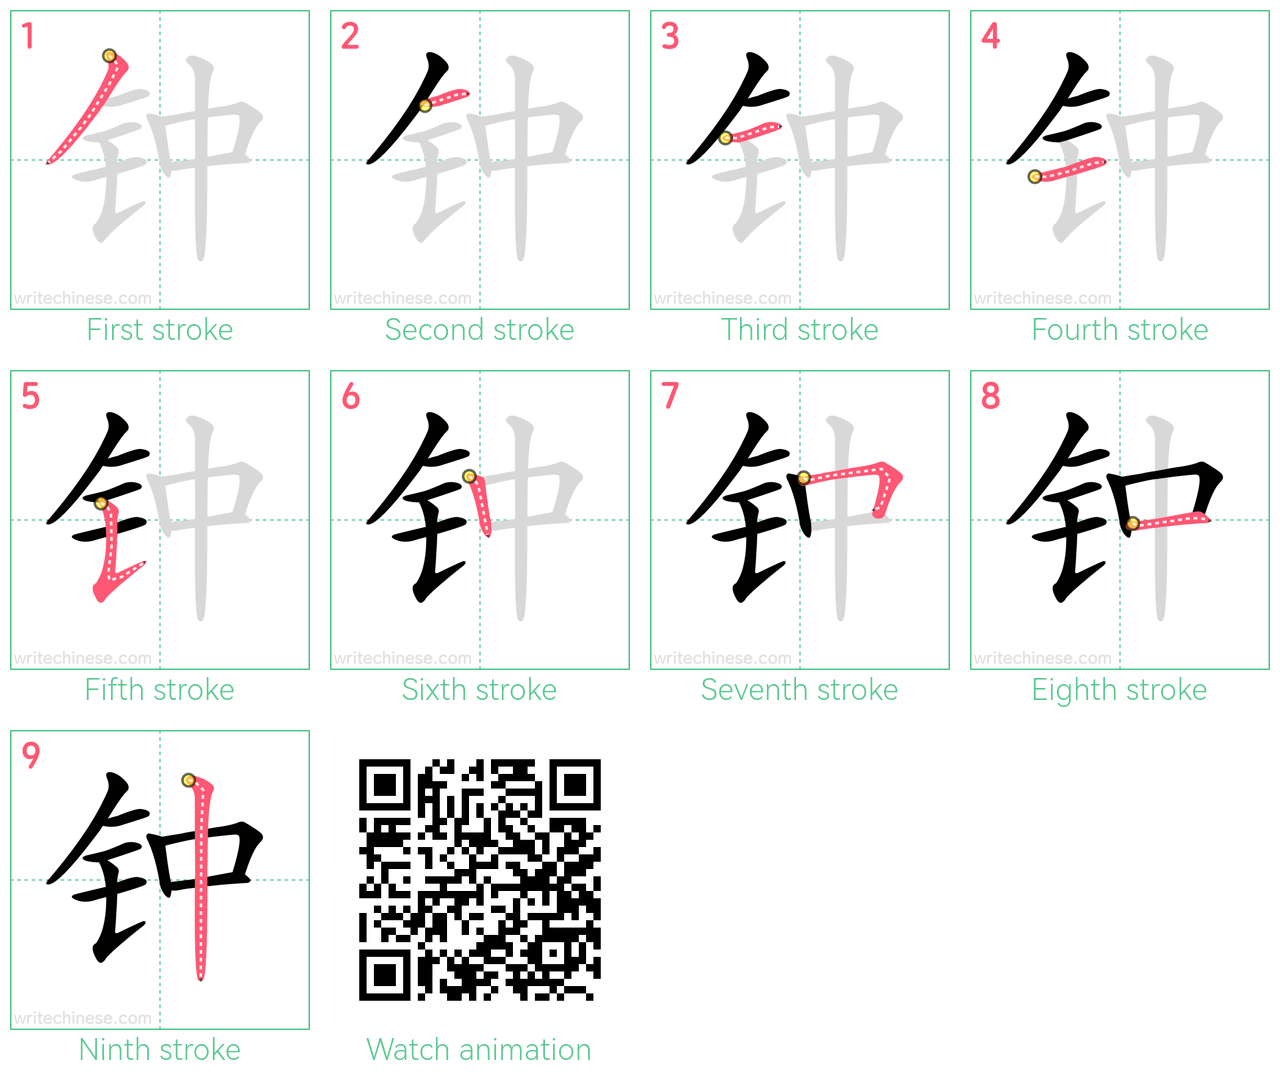 钟 step-by-step stroke order diagrams